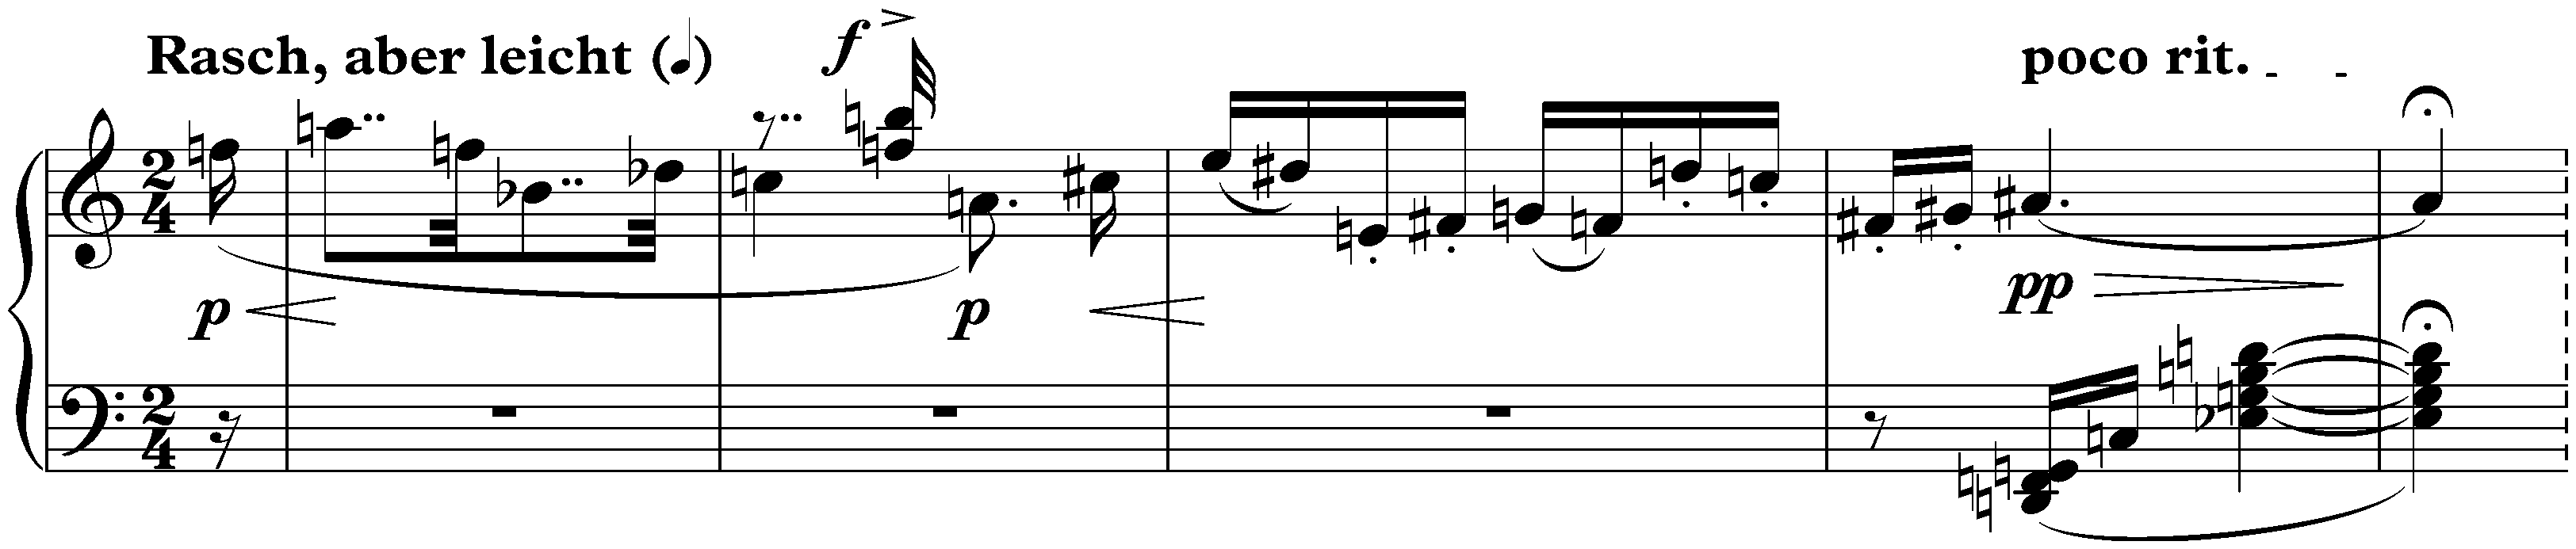 Sechs kleine Klavierstücke, op. 19; 4. Rasch, aber leicht